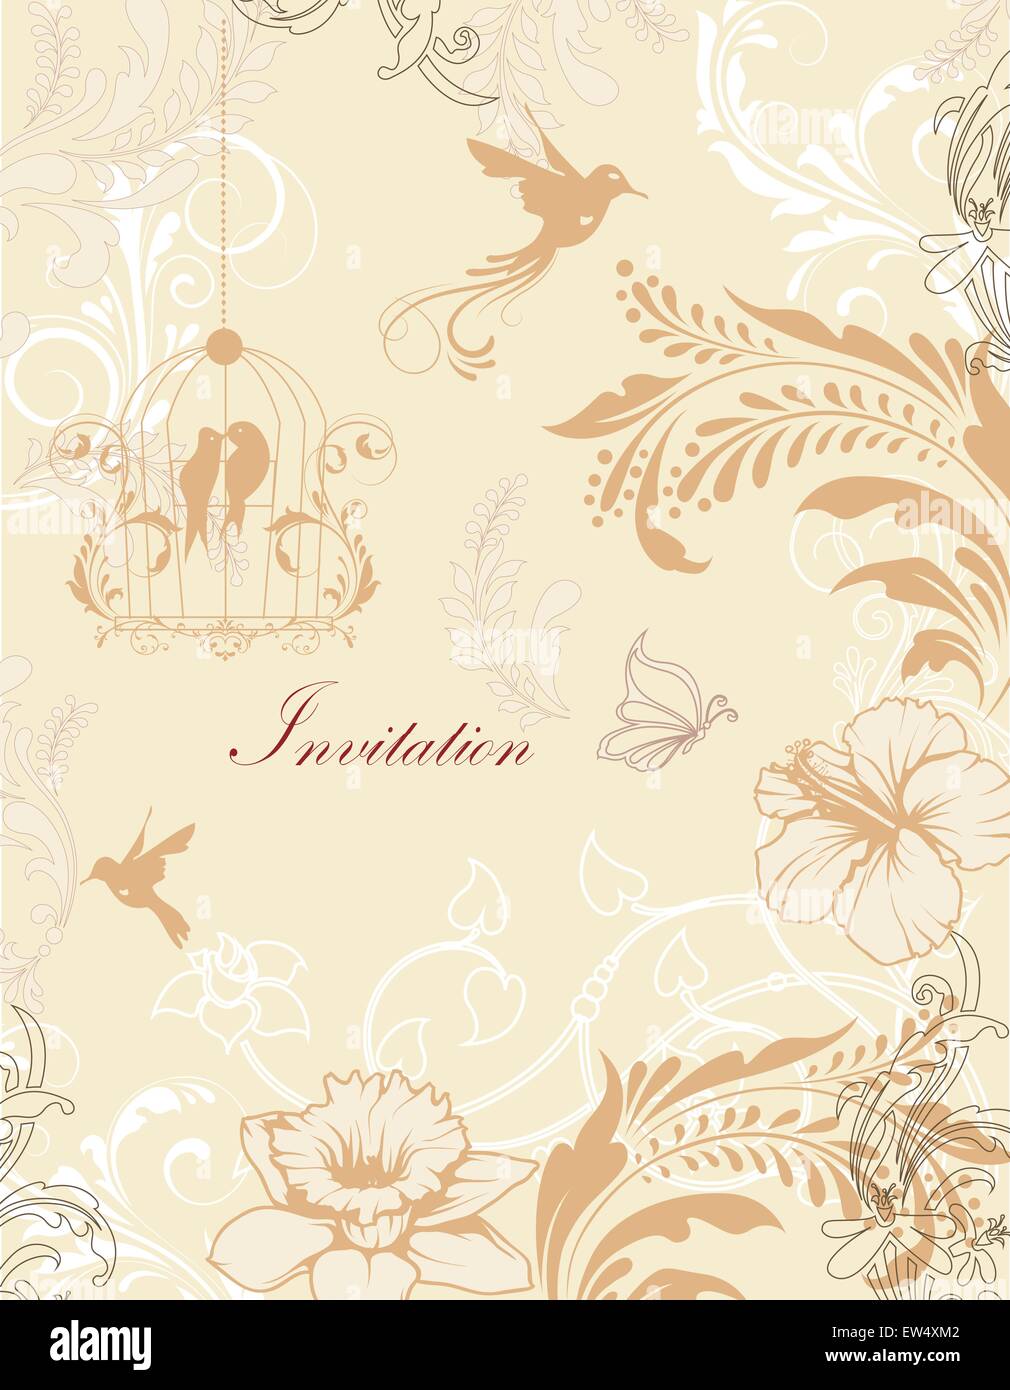 Carte d'invitation Vintage Retro élégant décoré abstract floral design, blanc beige et brun clair fleurs et feuilles sur baig Illustration de Vecteur